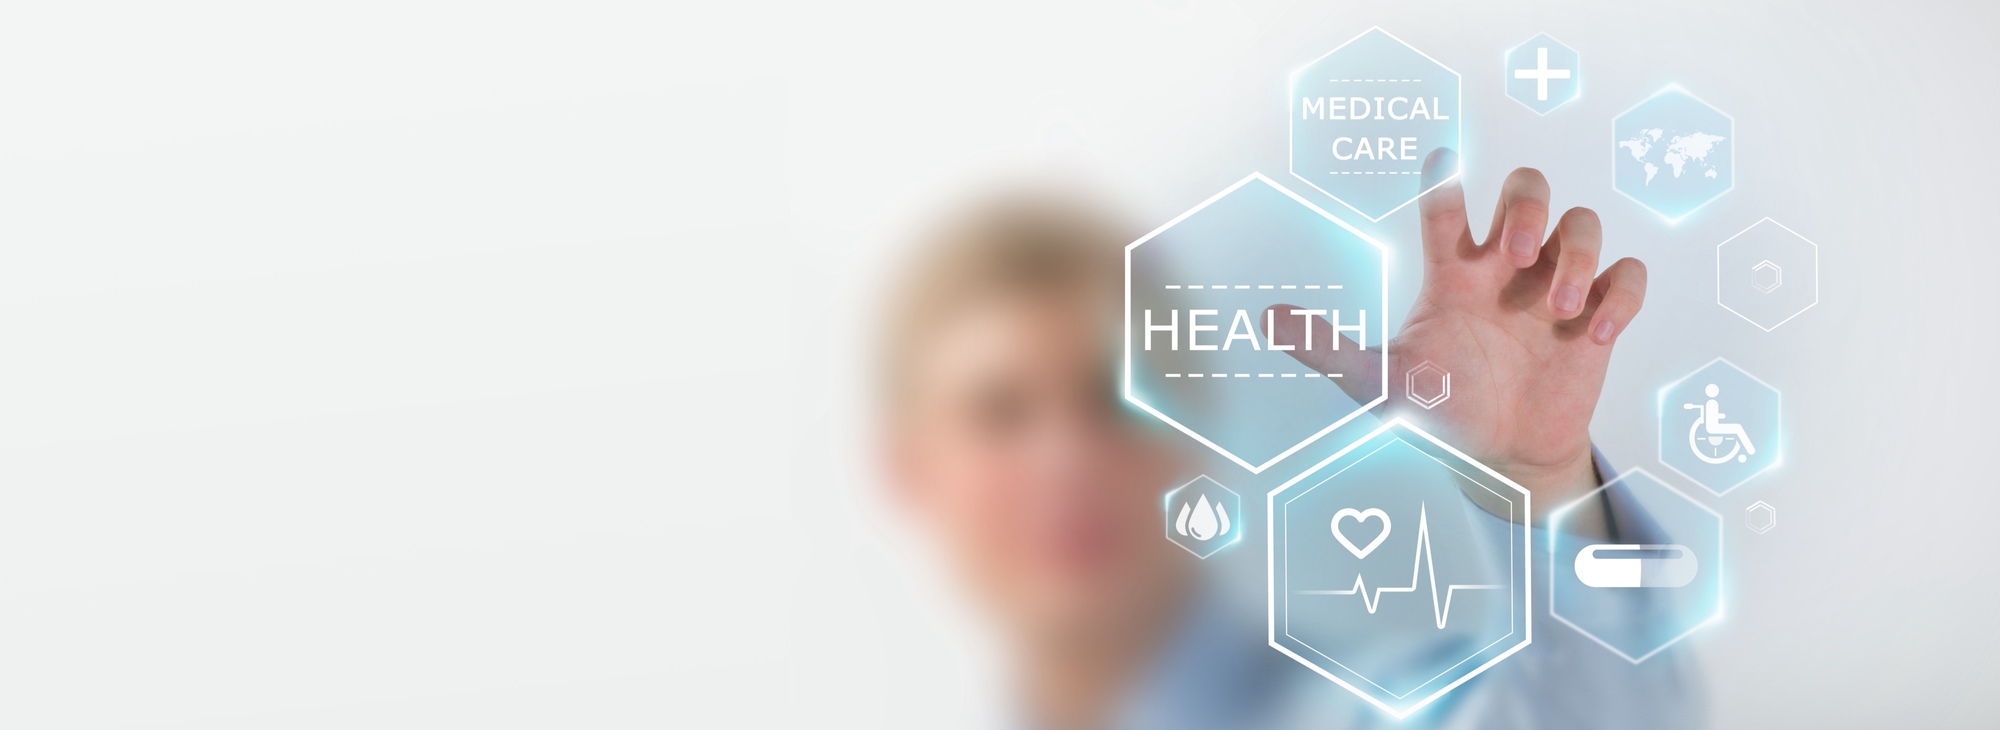 Symbolbild für Healthcare Marketing: Männliche Person zeigt auf 3D-Visualisierung medizinischer Symbole